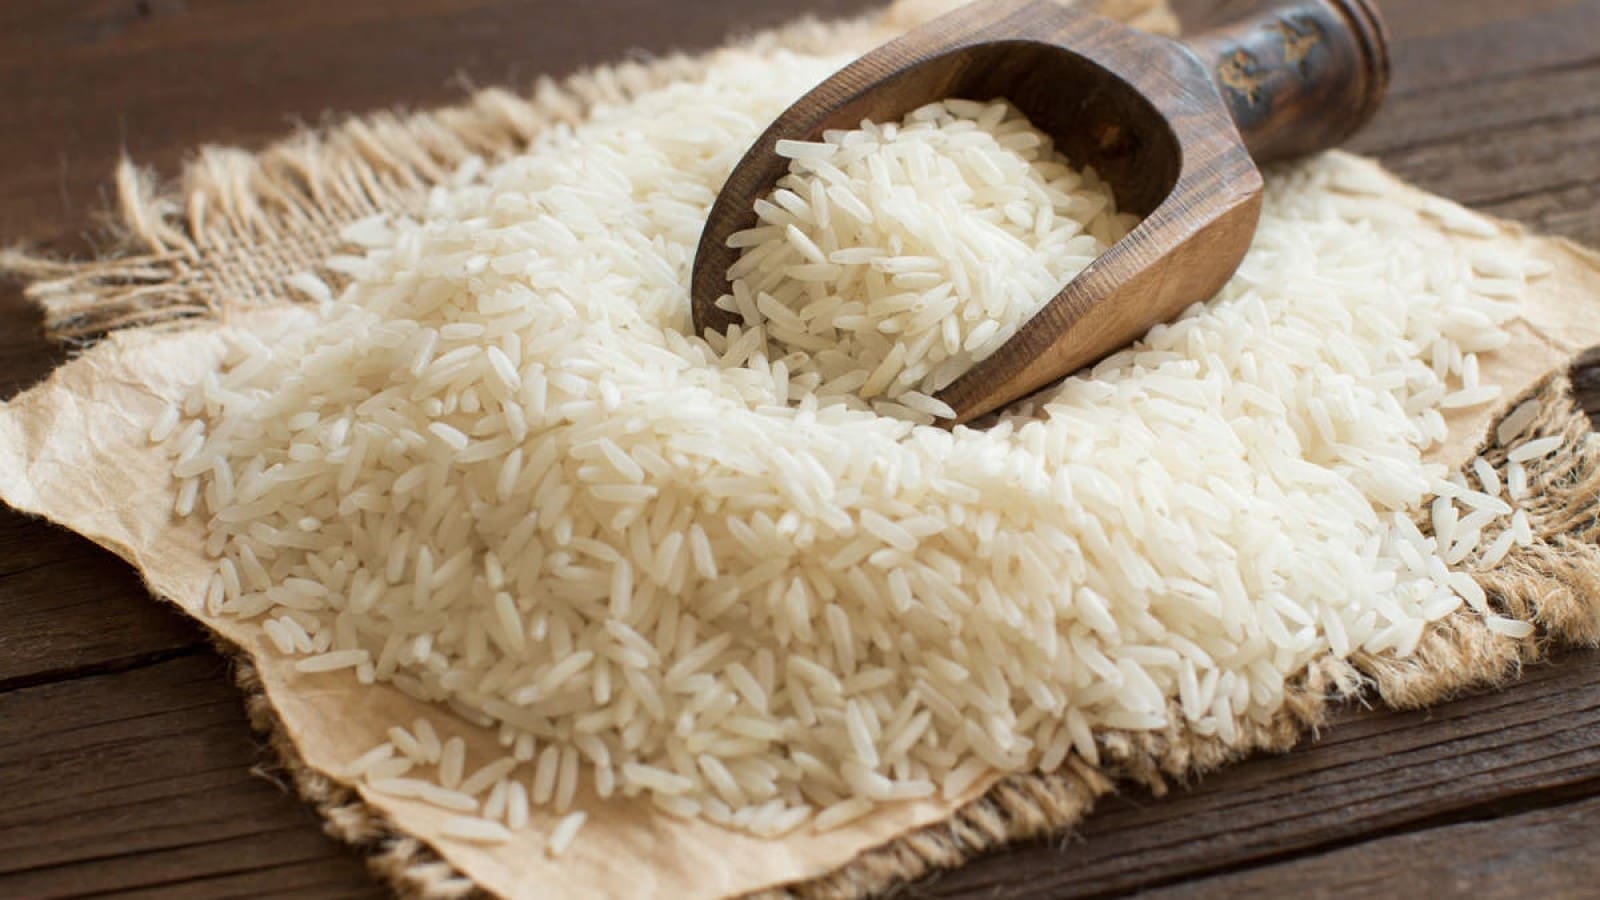 India agrees to export 75,000 tonnes of non-Basmati white rice to UAE